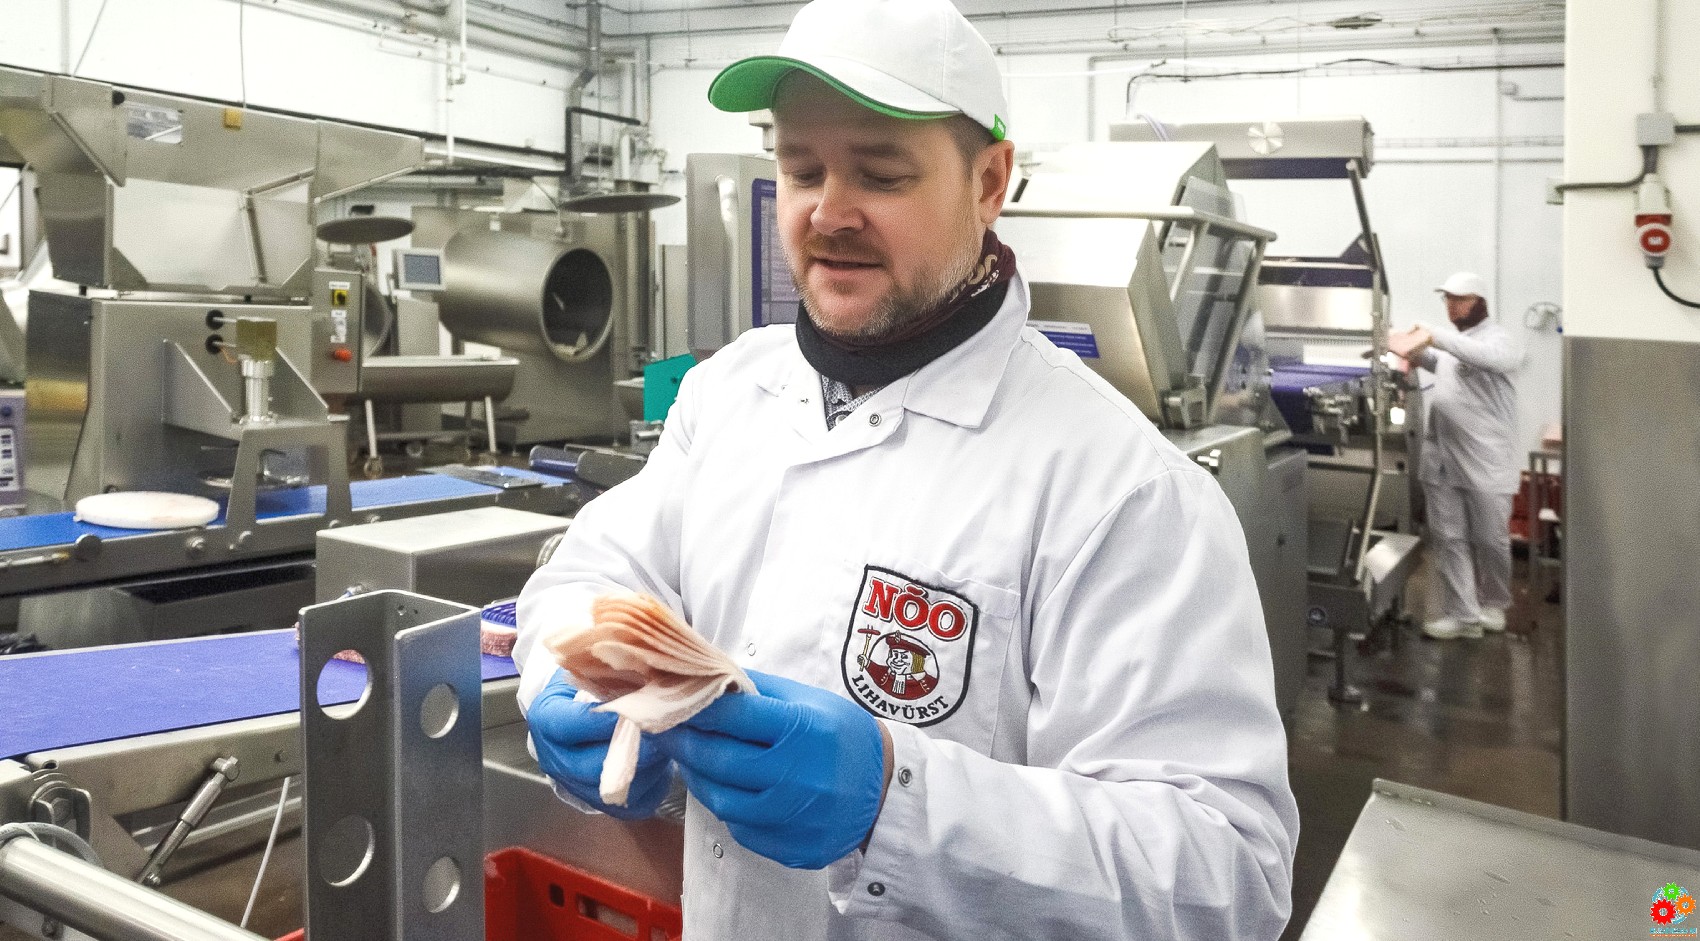 Nõo Lihatööstus – первый в Эстонии производитель сырокопченого бекона